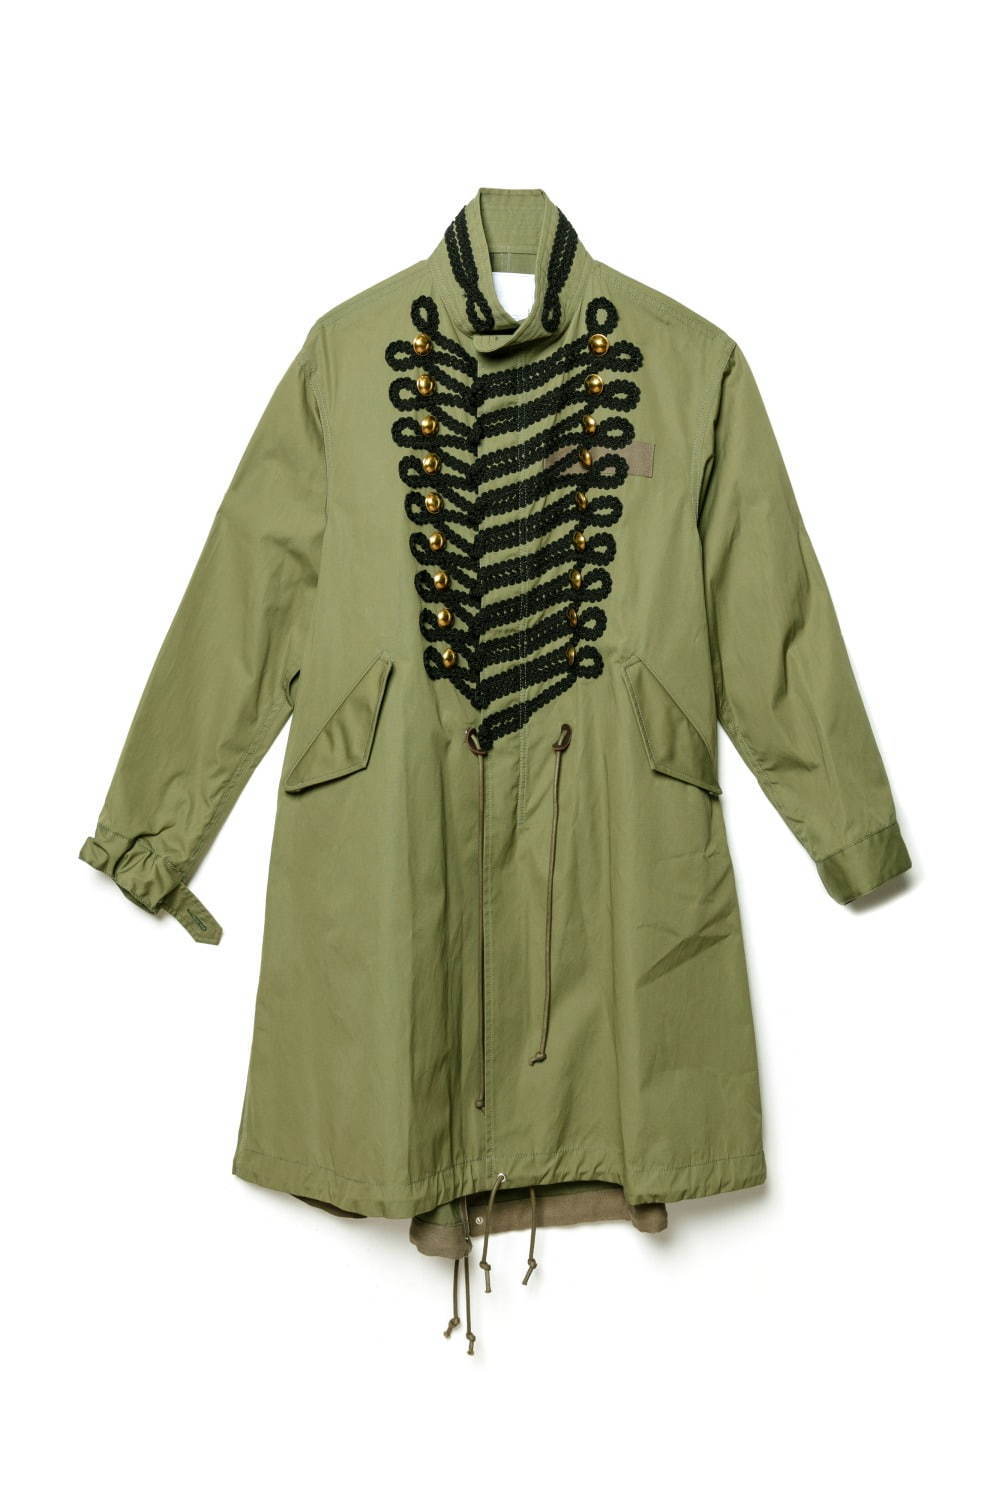 sacai ドーバー限定のモッズコート、ナポレオンジャケットの装飾を加え 